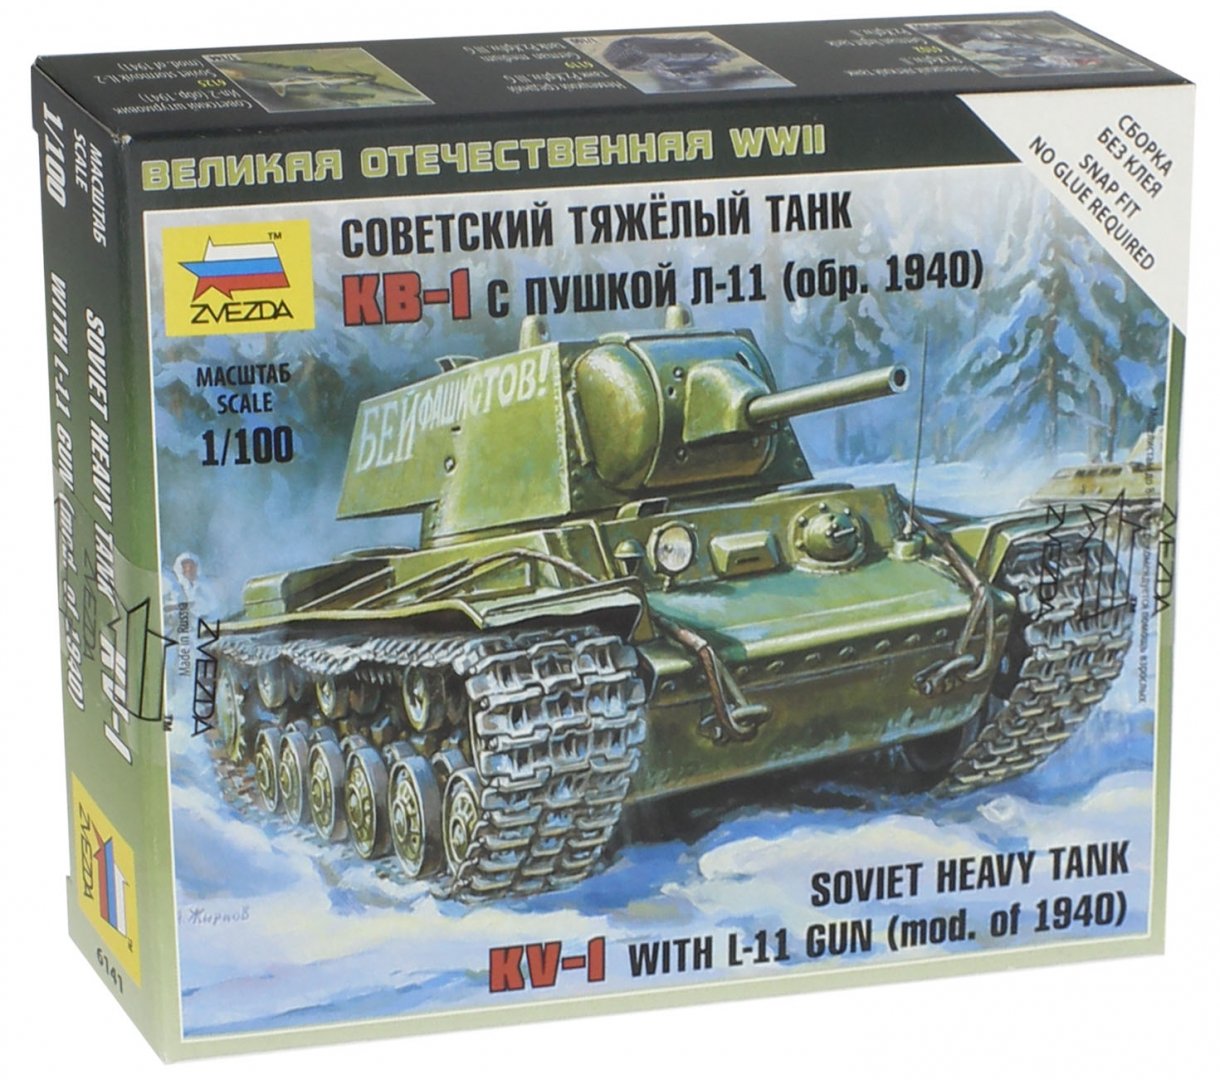 Иллюстрация 1 из 13 для Советский тяжелый танк КВ-1 обр. 1940 г. (6141) | Лабиринт - игрушки. Источник: Лабиринт